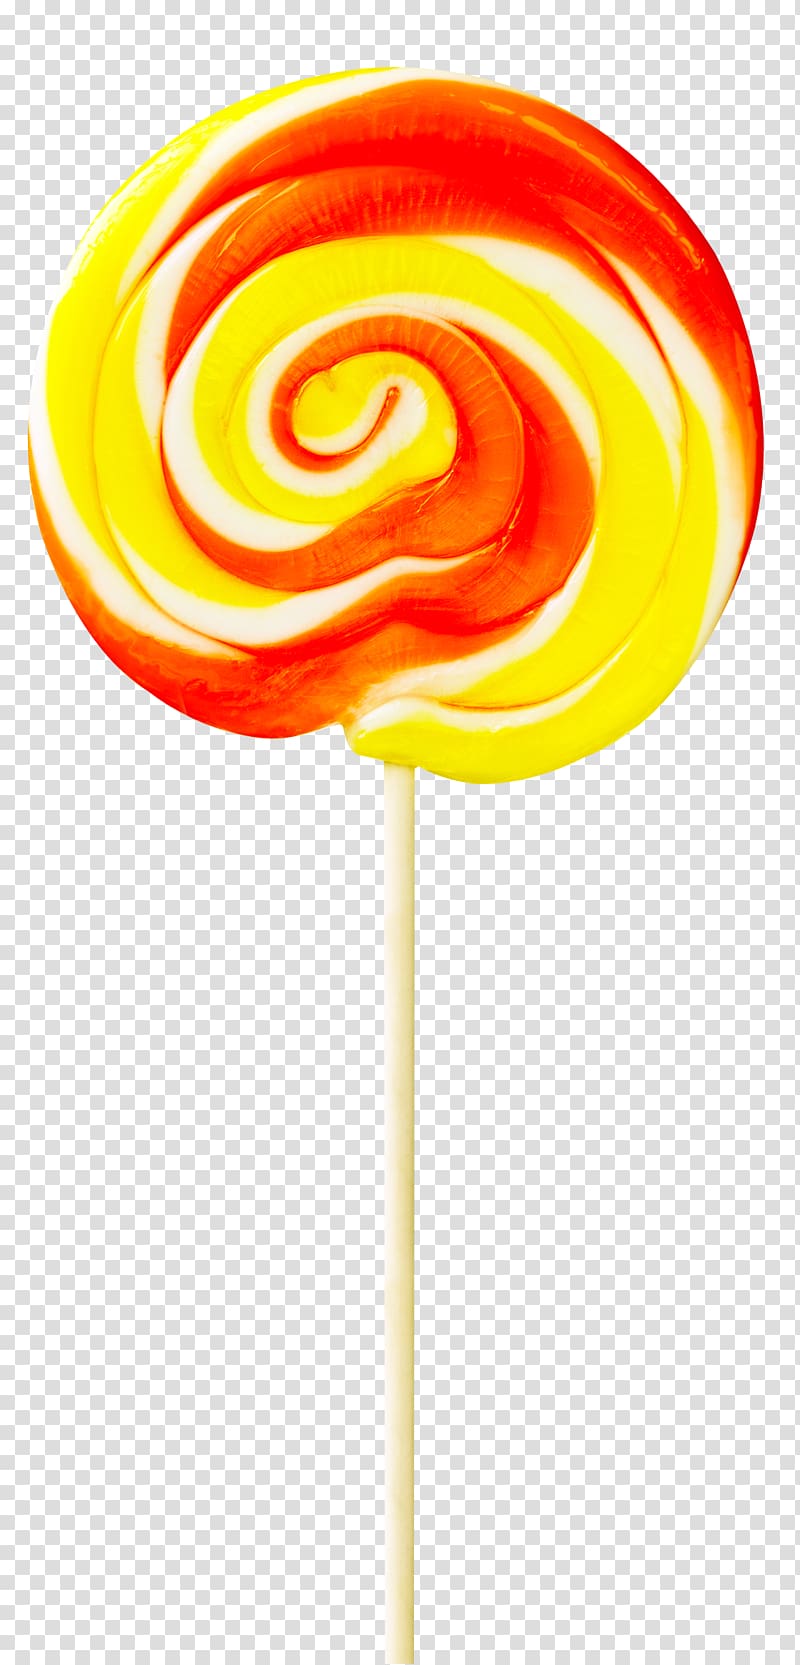 Android Lollipop Cotton candy Buffet, Lollipop transparent background PNG clipart